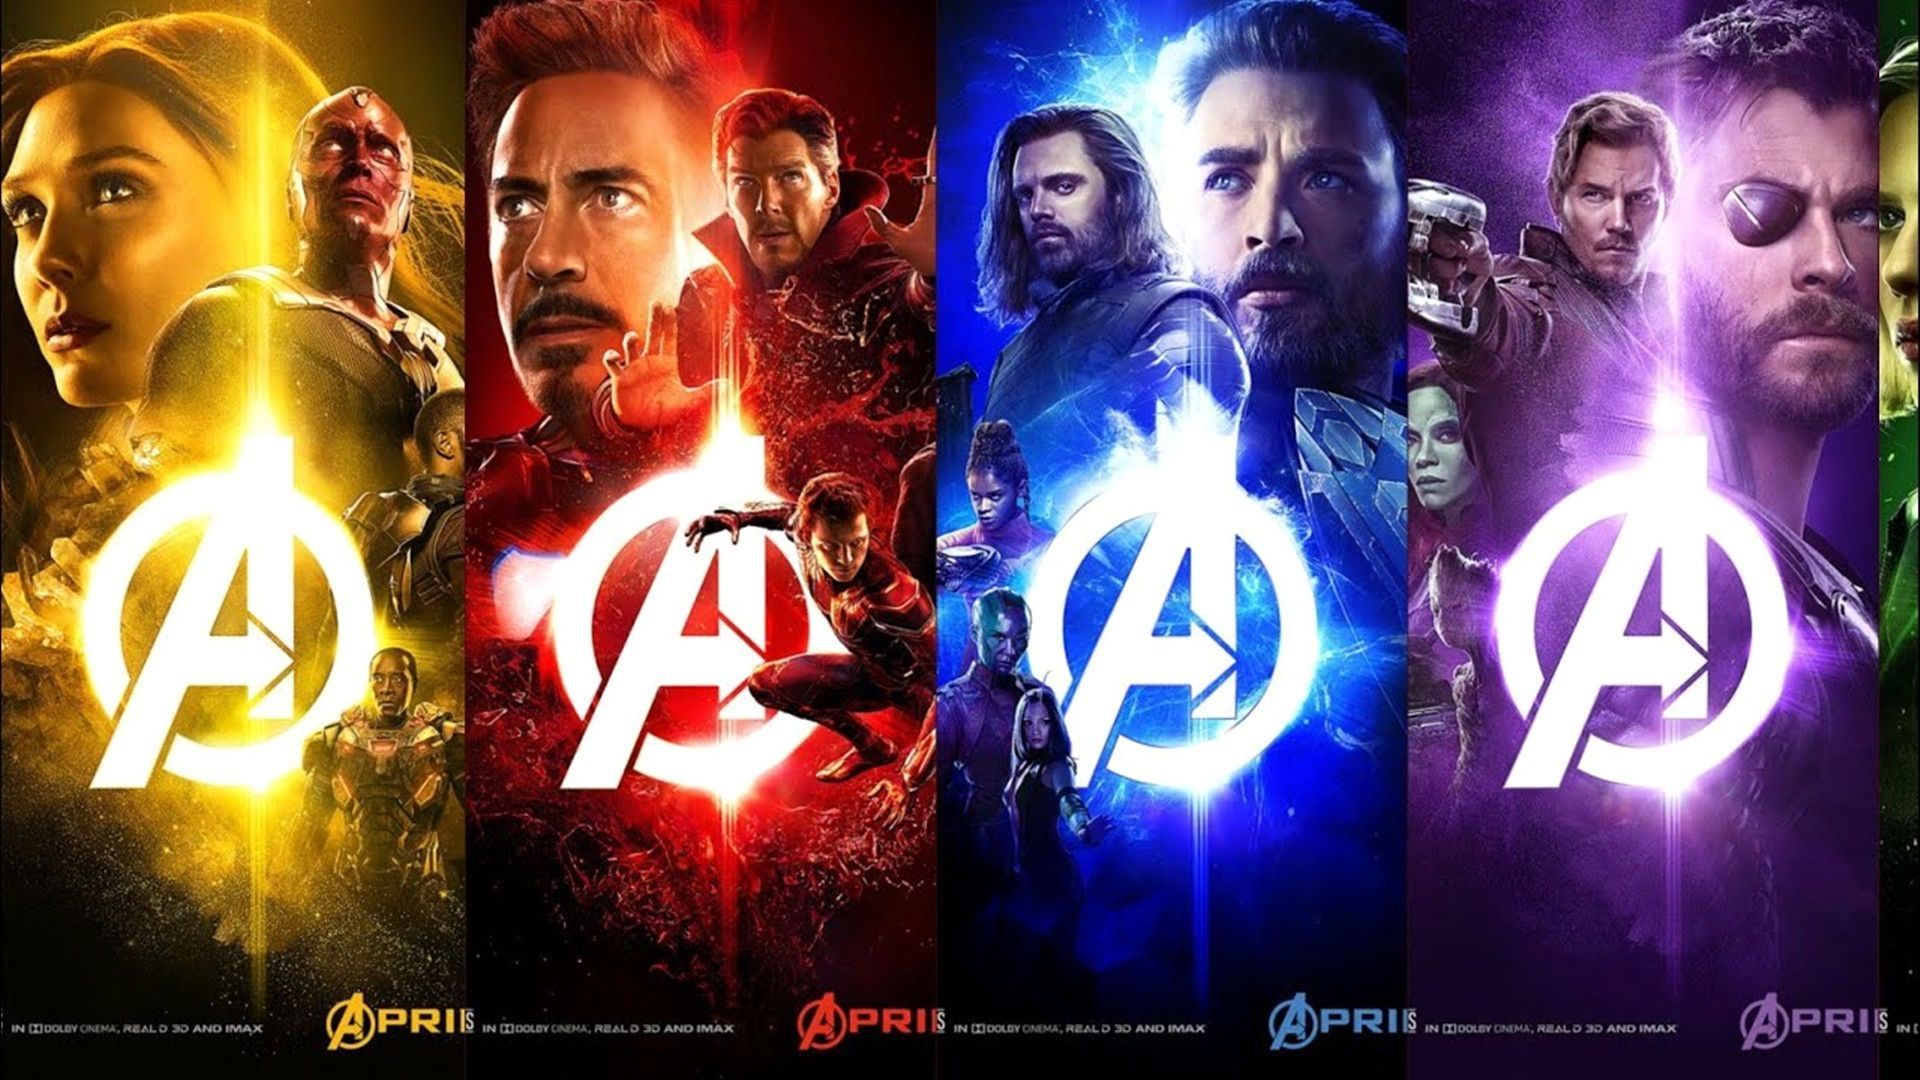 Inspirational Avengers Endgame Movie Four Characters Wallpaper. Character wallpaper, Avengers, HD wallpaper